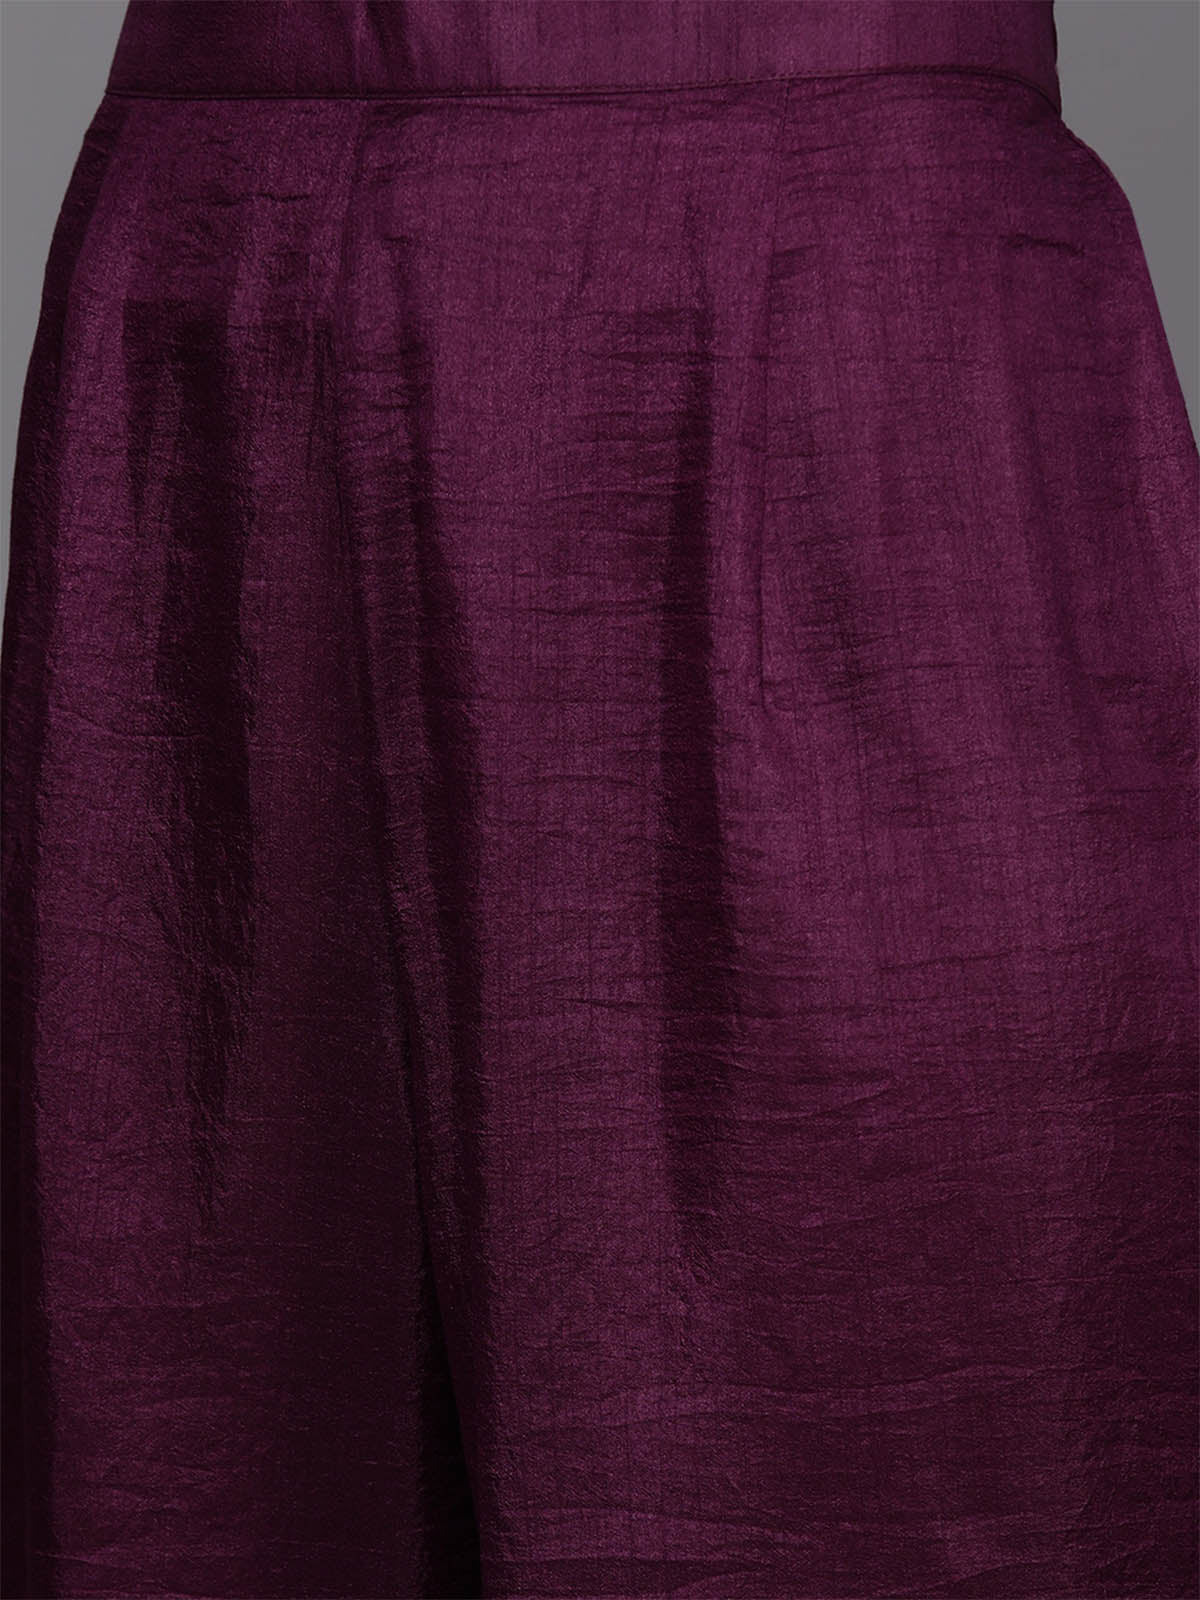 Purple Embroidered Straight Stitched Kurta Palazzo With Dupatta Set